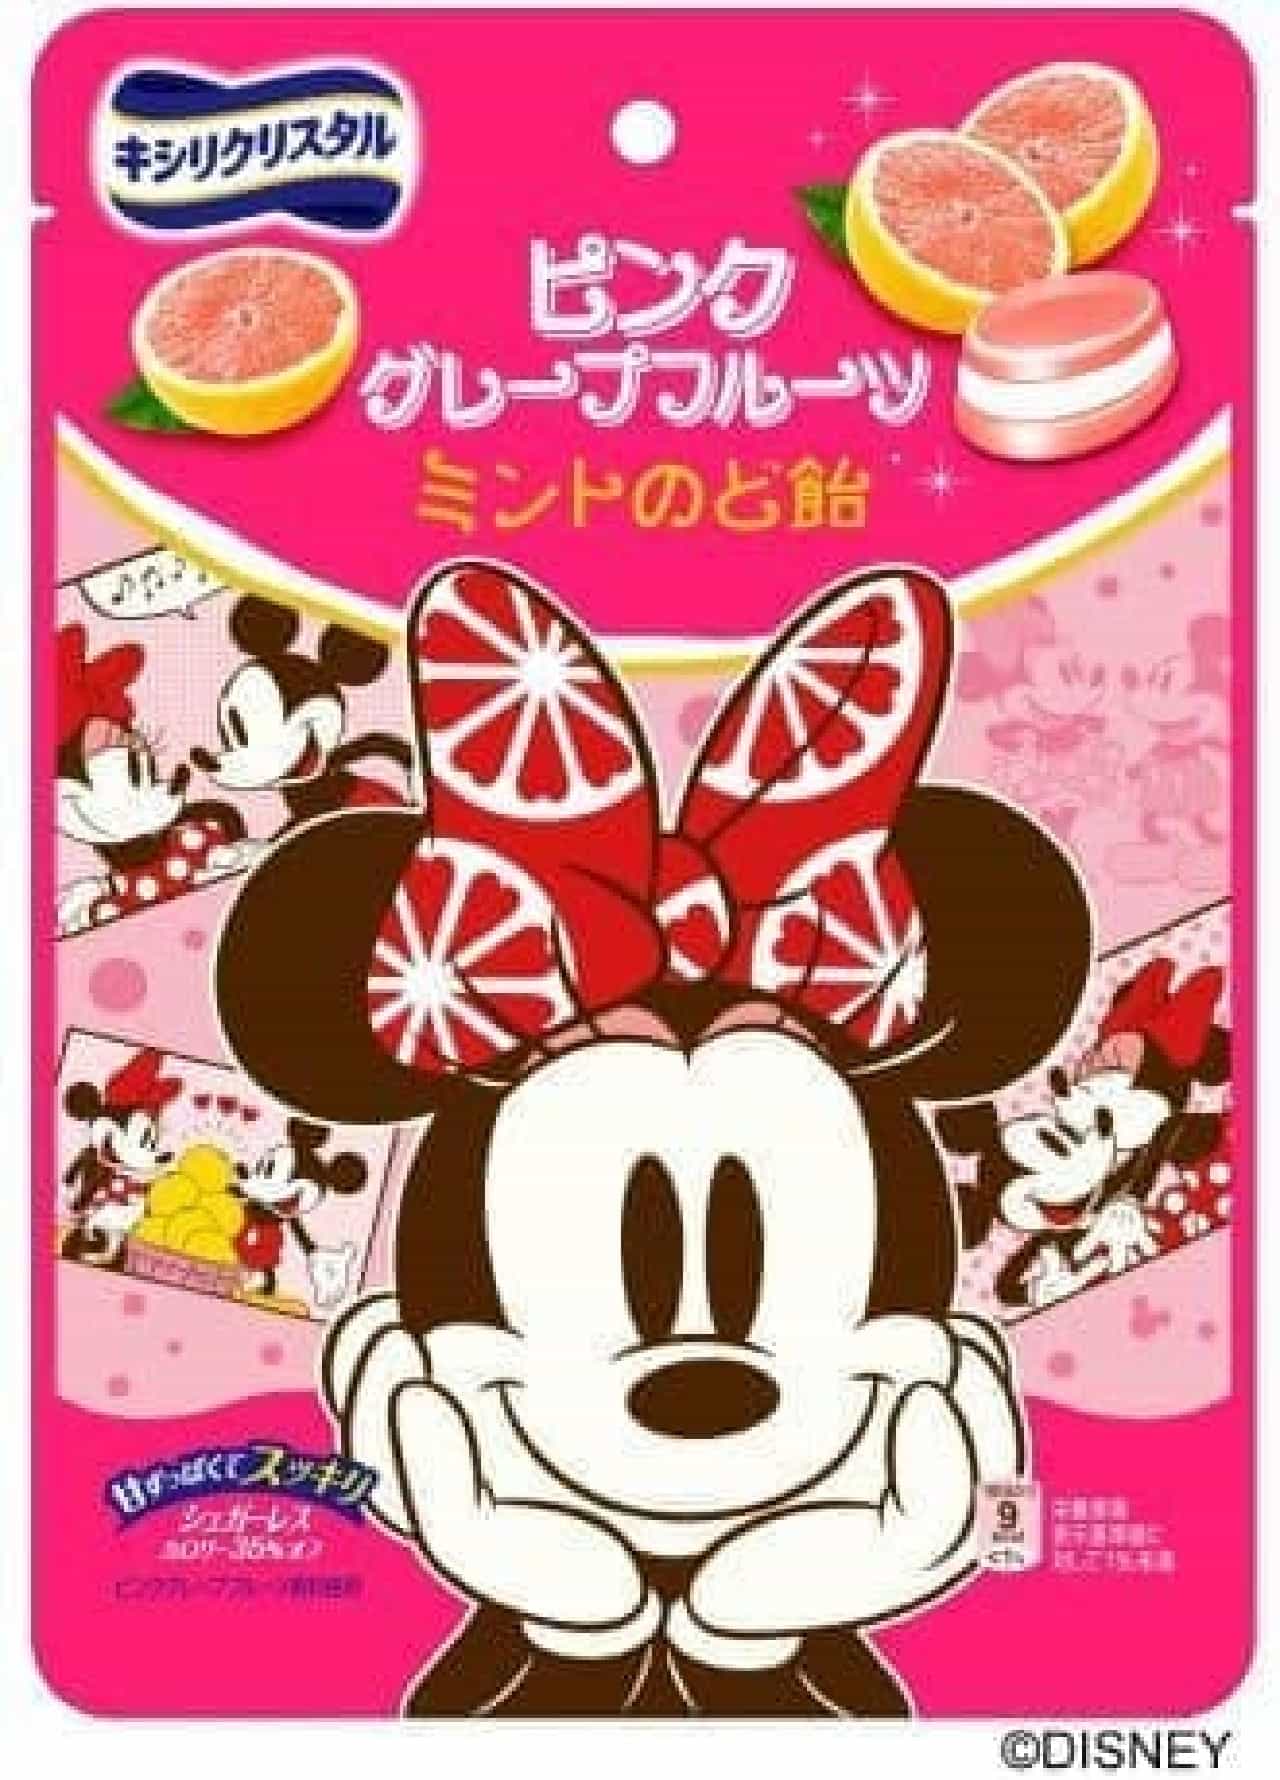 ミニーデザインの「キシリクリスタル ピンクグレープフルーツミントのど飴」